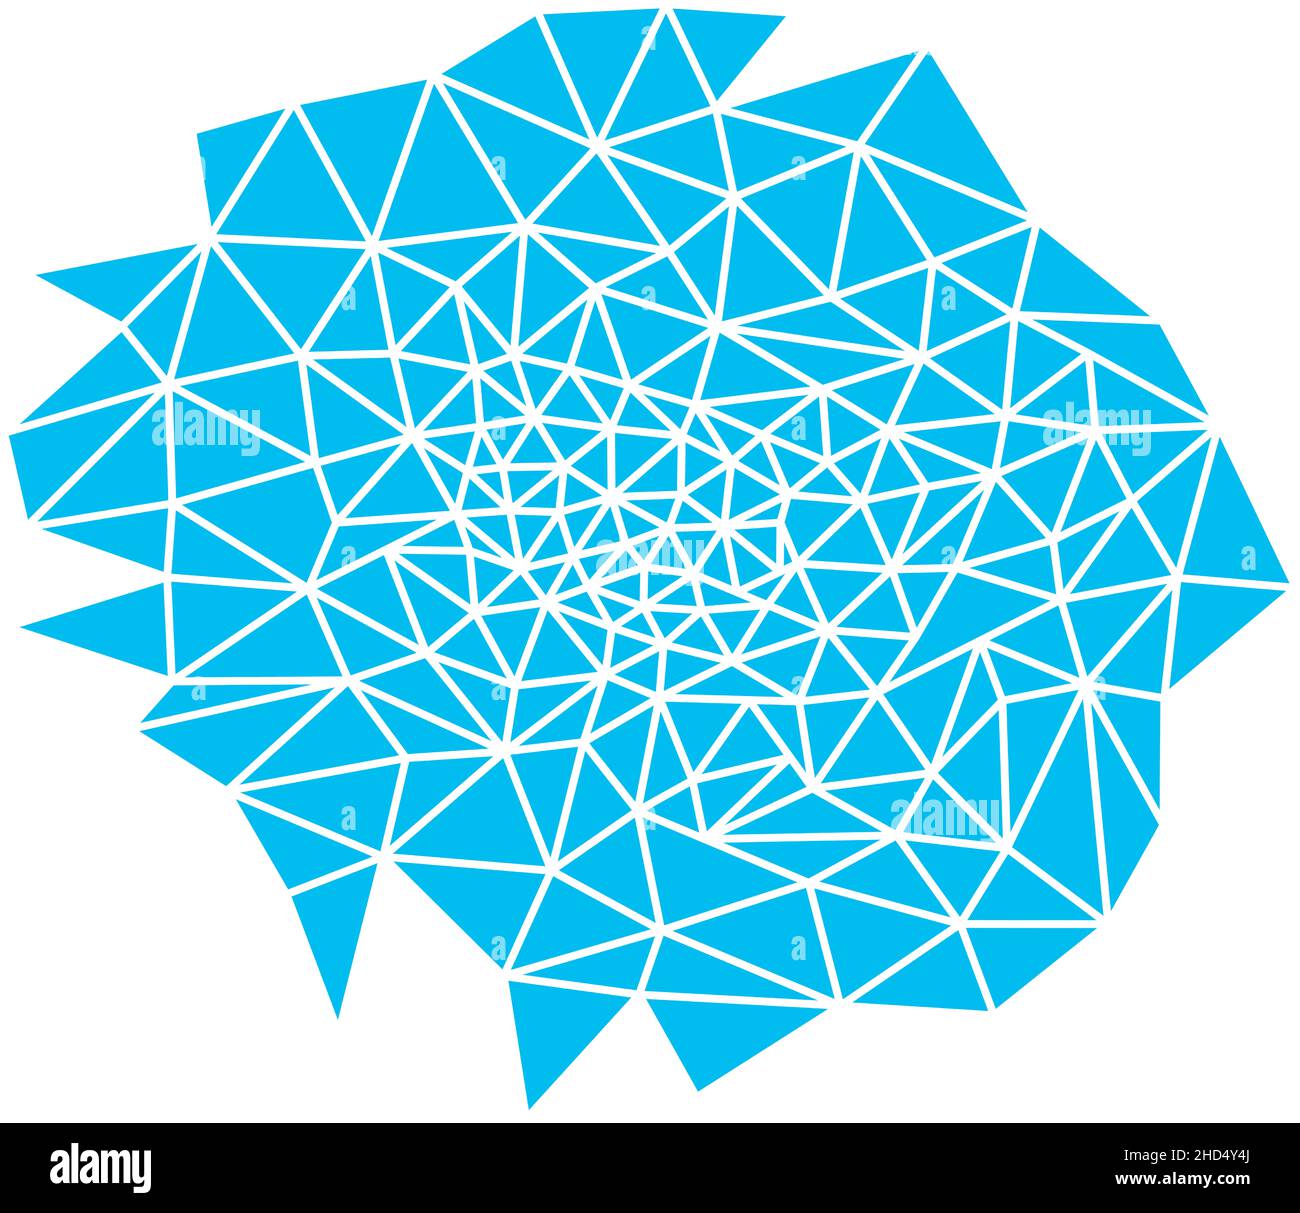 Arrière-plan bleu abstrait.Formes géométriques sous forme de toile, couleur turquoise.Il y a beaucoup de triangles dans un arrangement désordonné.Illustration raster. Banque D'Images